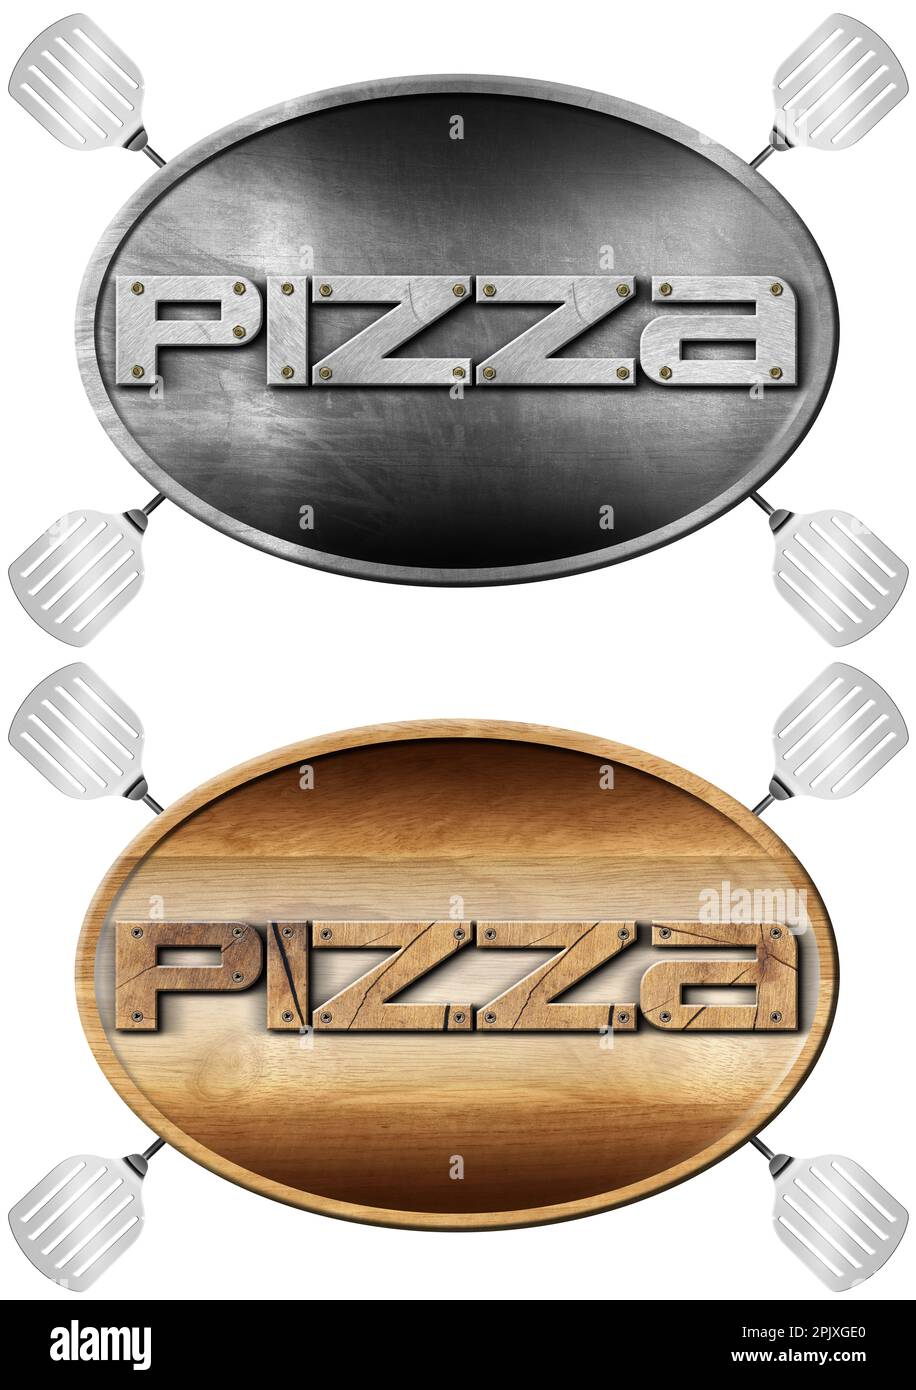 Simbolo metallico e di legno con testo Pizza e quattro spatole, isolato su sfondo bianco. Illustrazione 3D. Logo pizzeria. Foto Stock